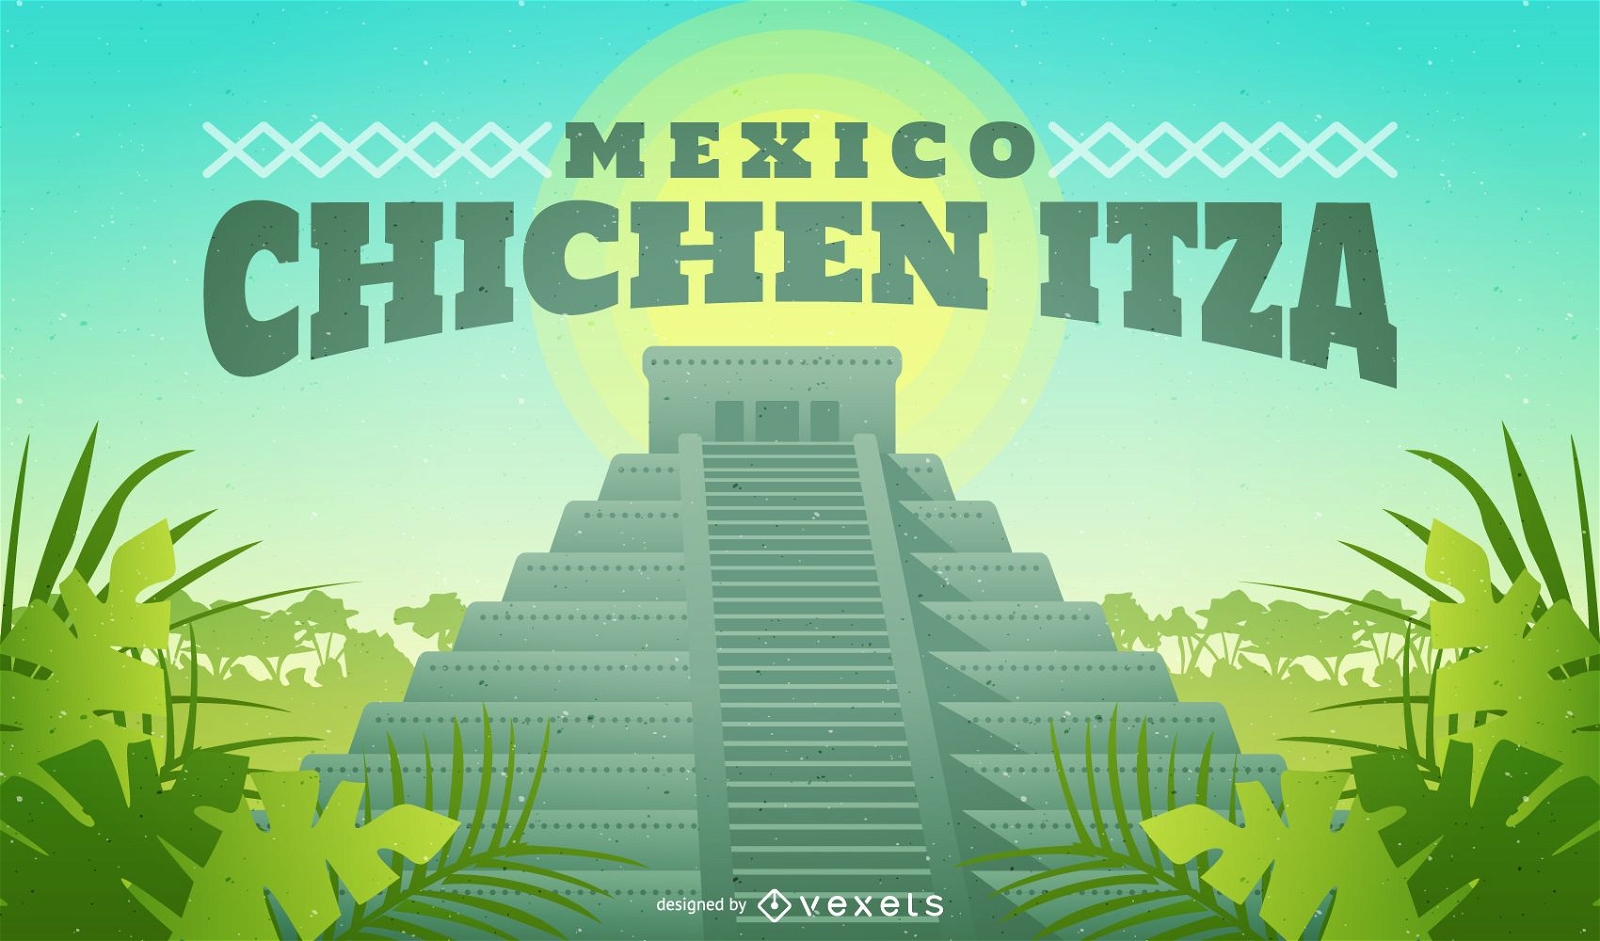 Chichen Itza Mexico illustration